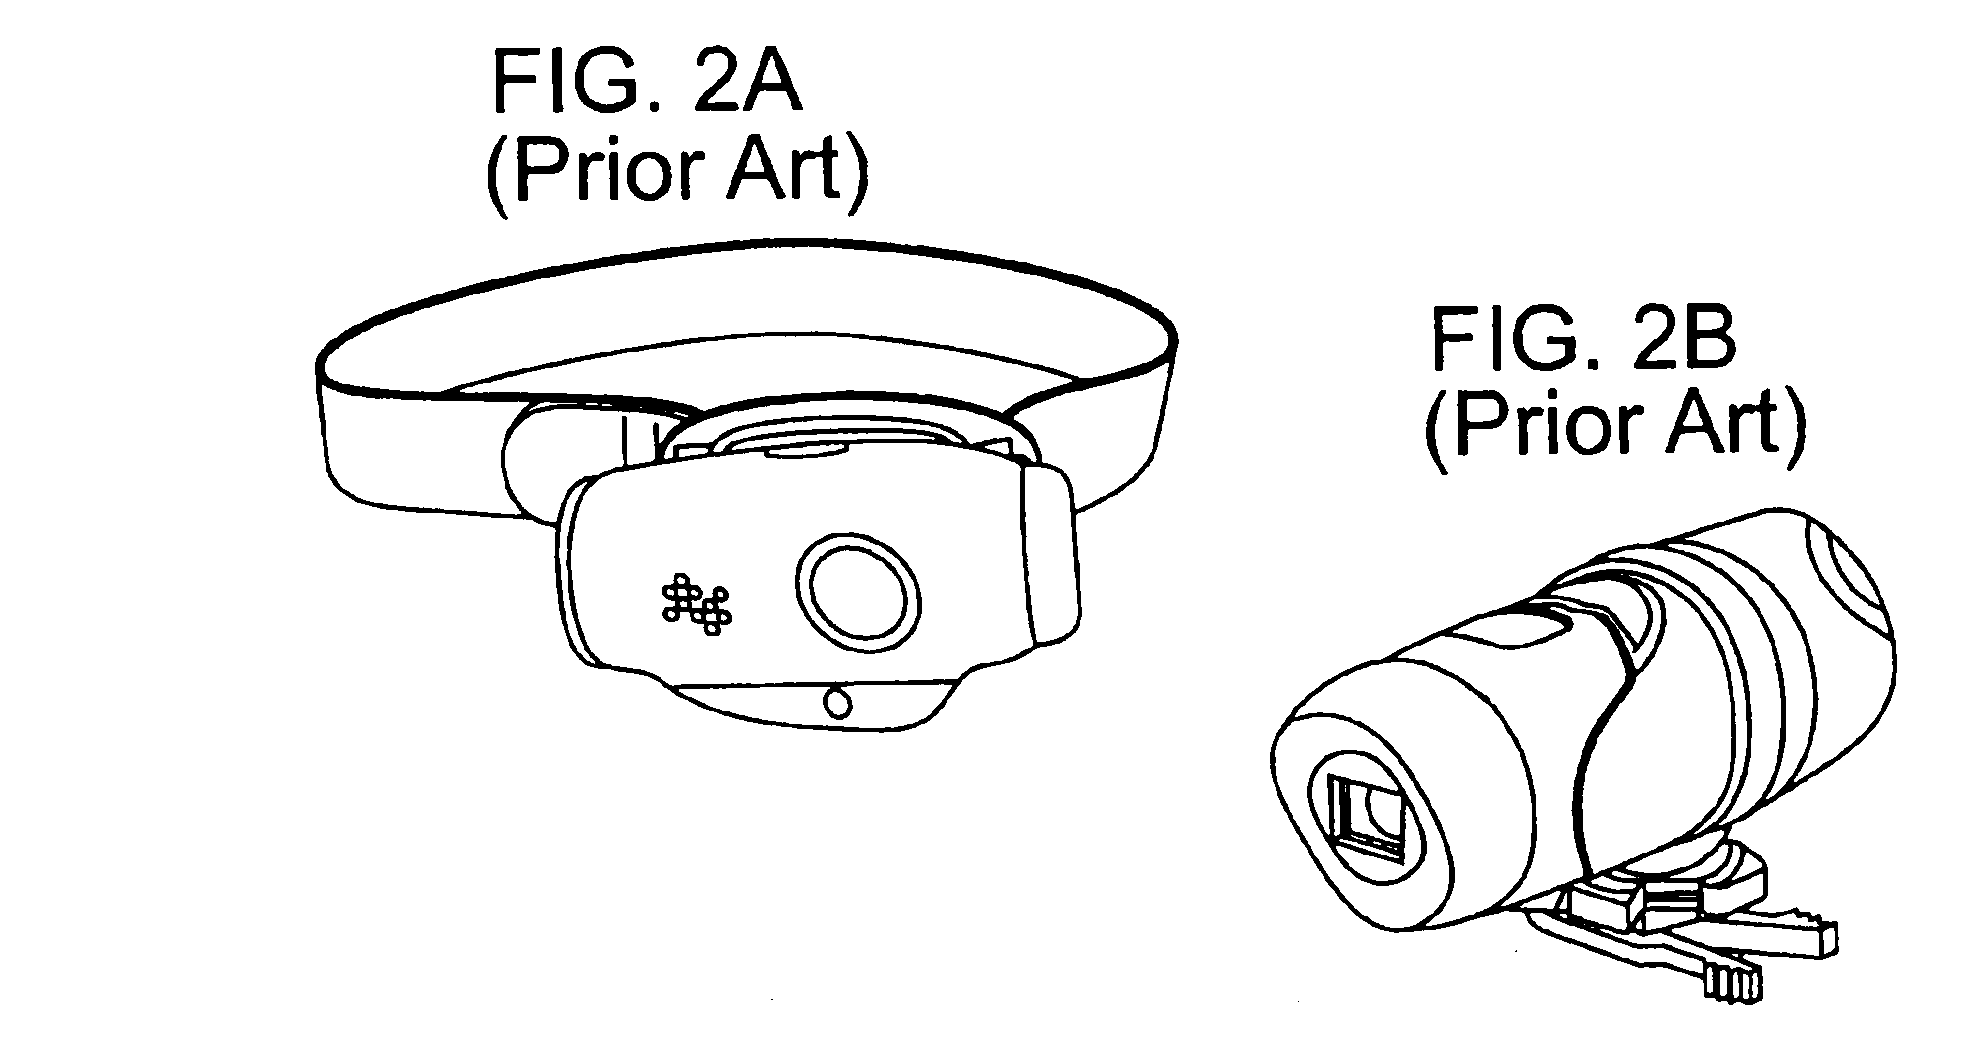 Components of a portable digital video camera